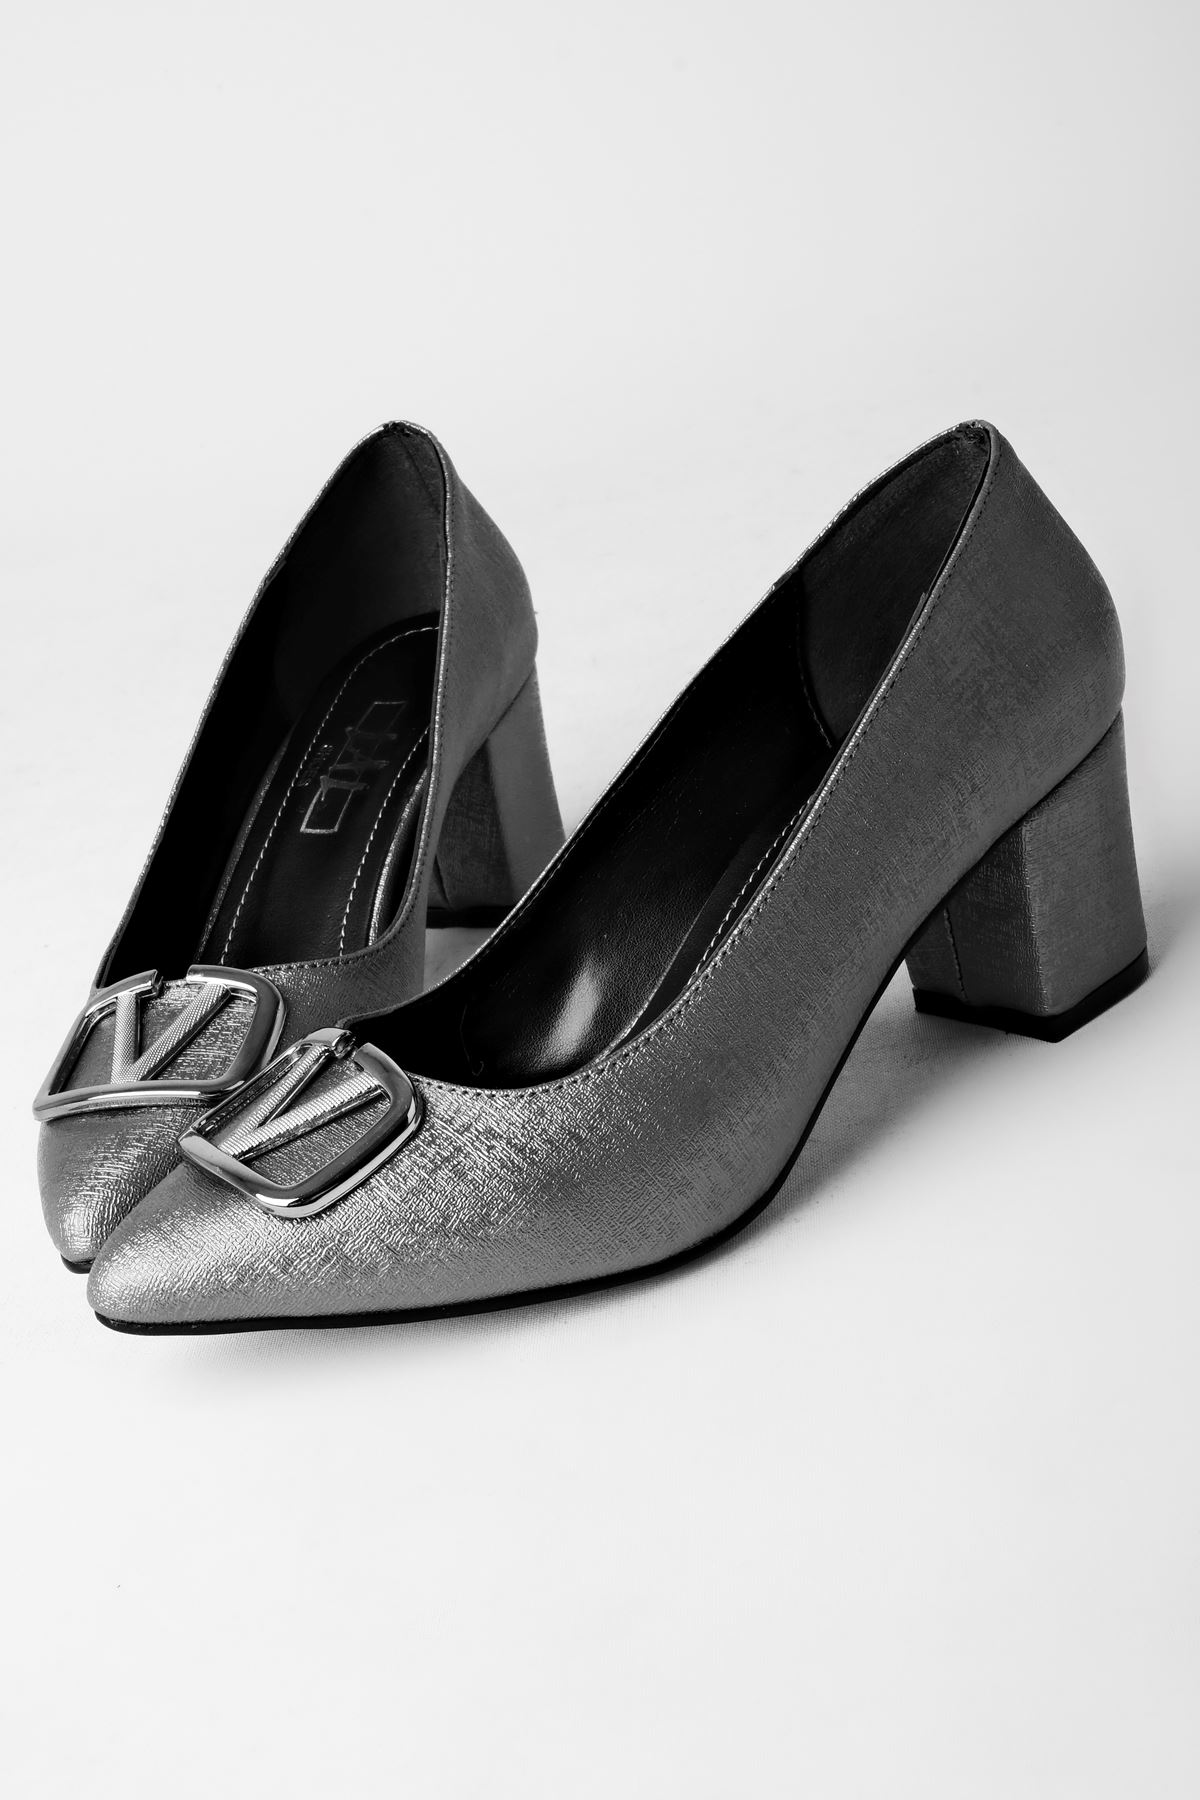 Daisy Kadın Topuklu Ayakkabı Metal V Detaylı-Gri